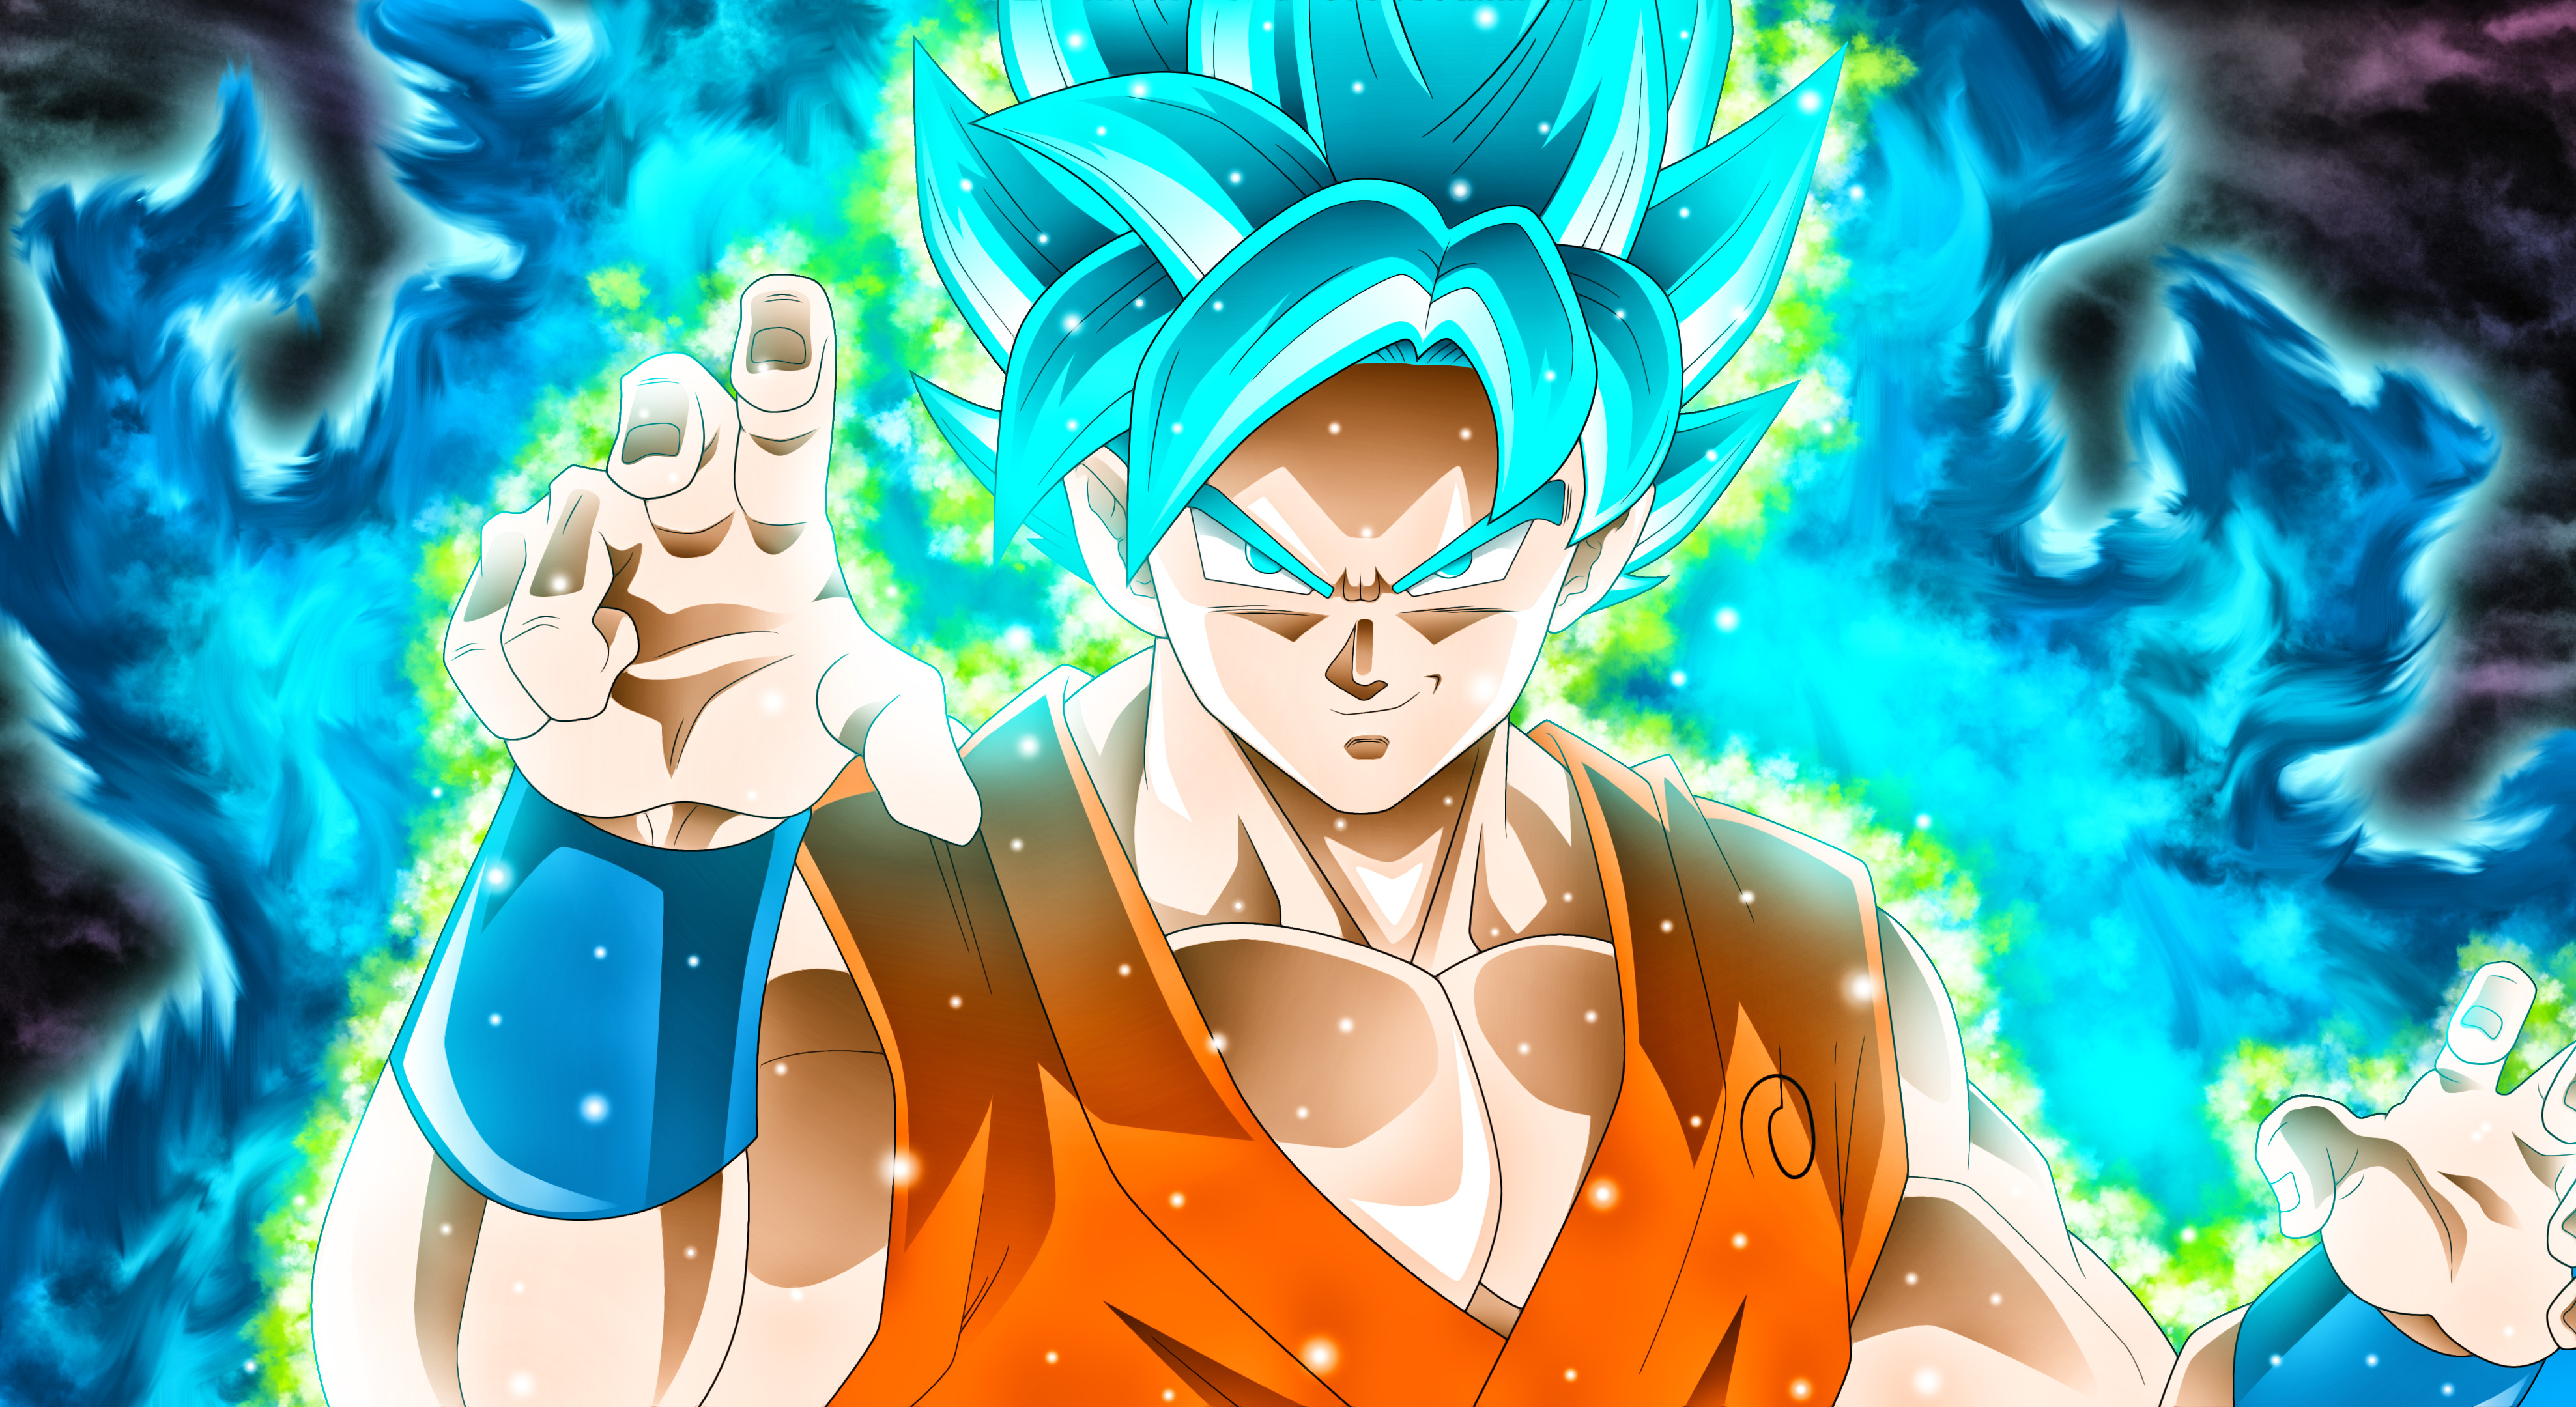 Goku Dragon Ball Super, HD Anime, 4k Wallpapers, Images ...